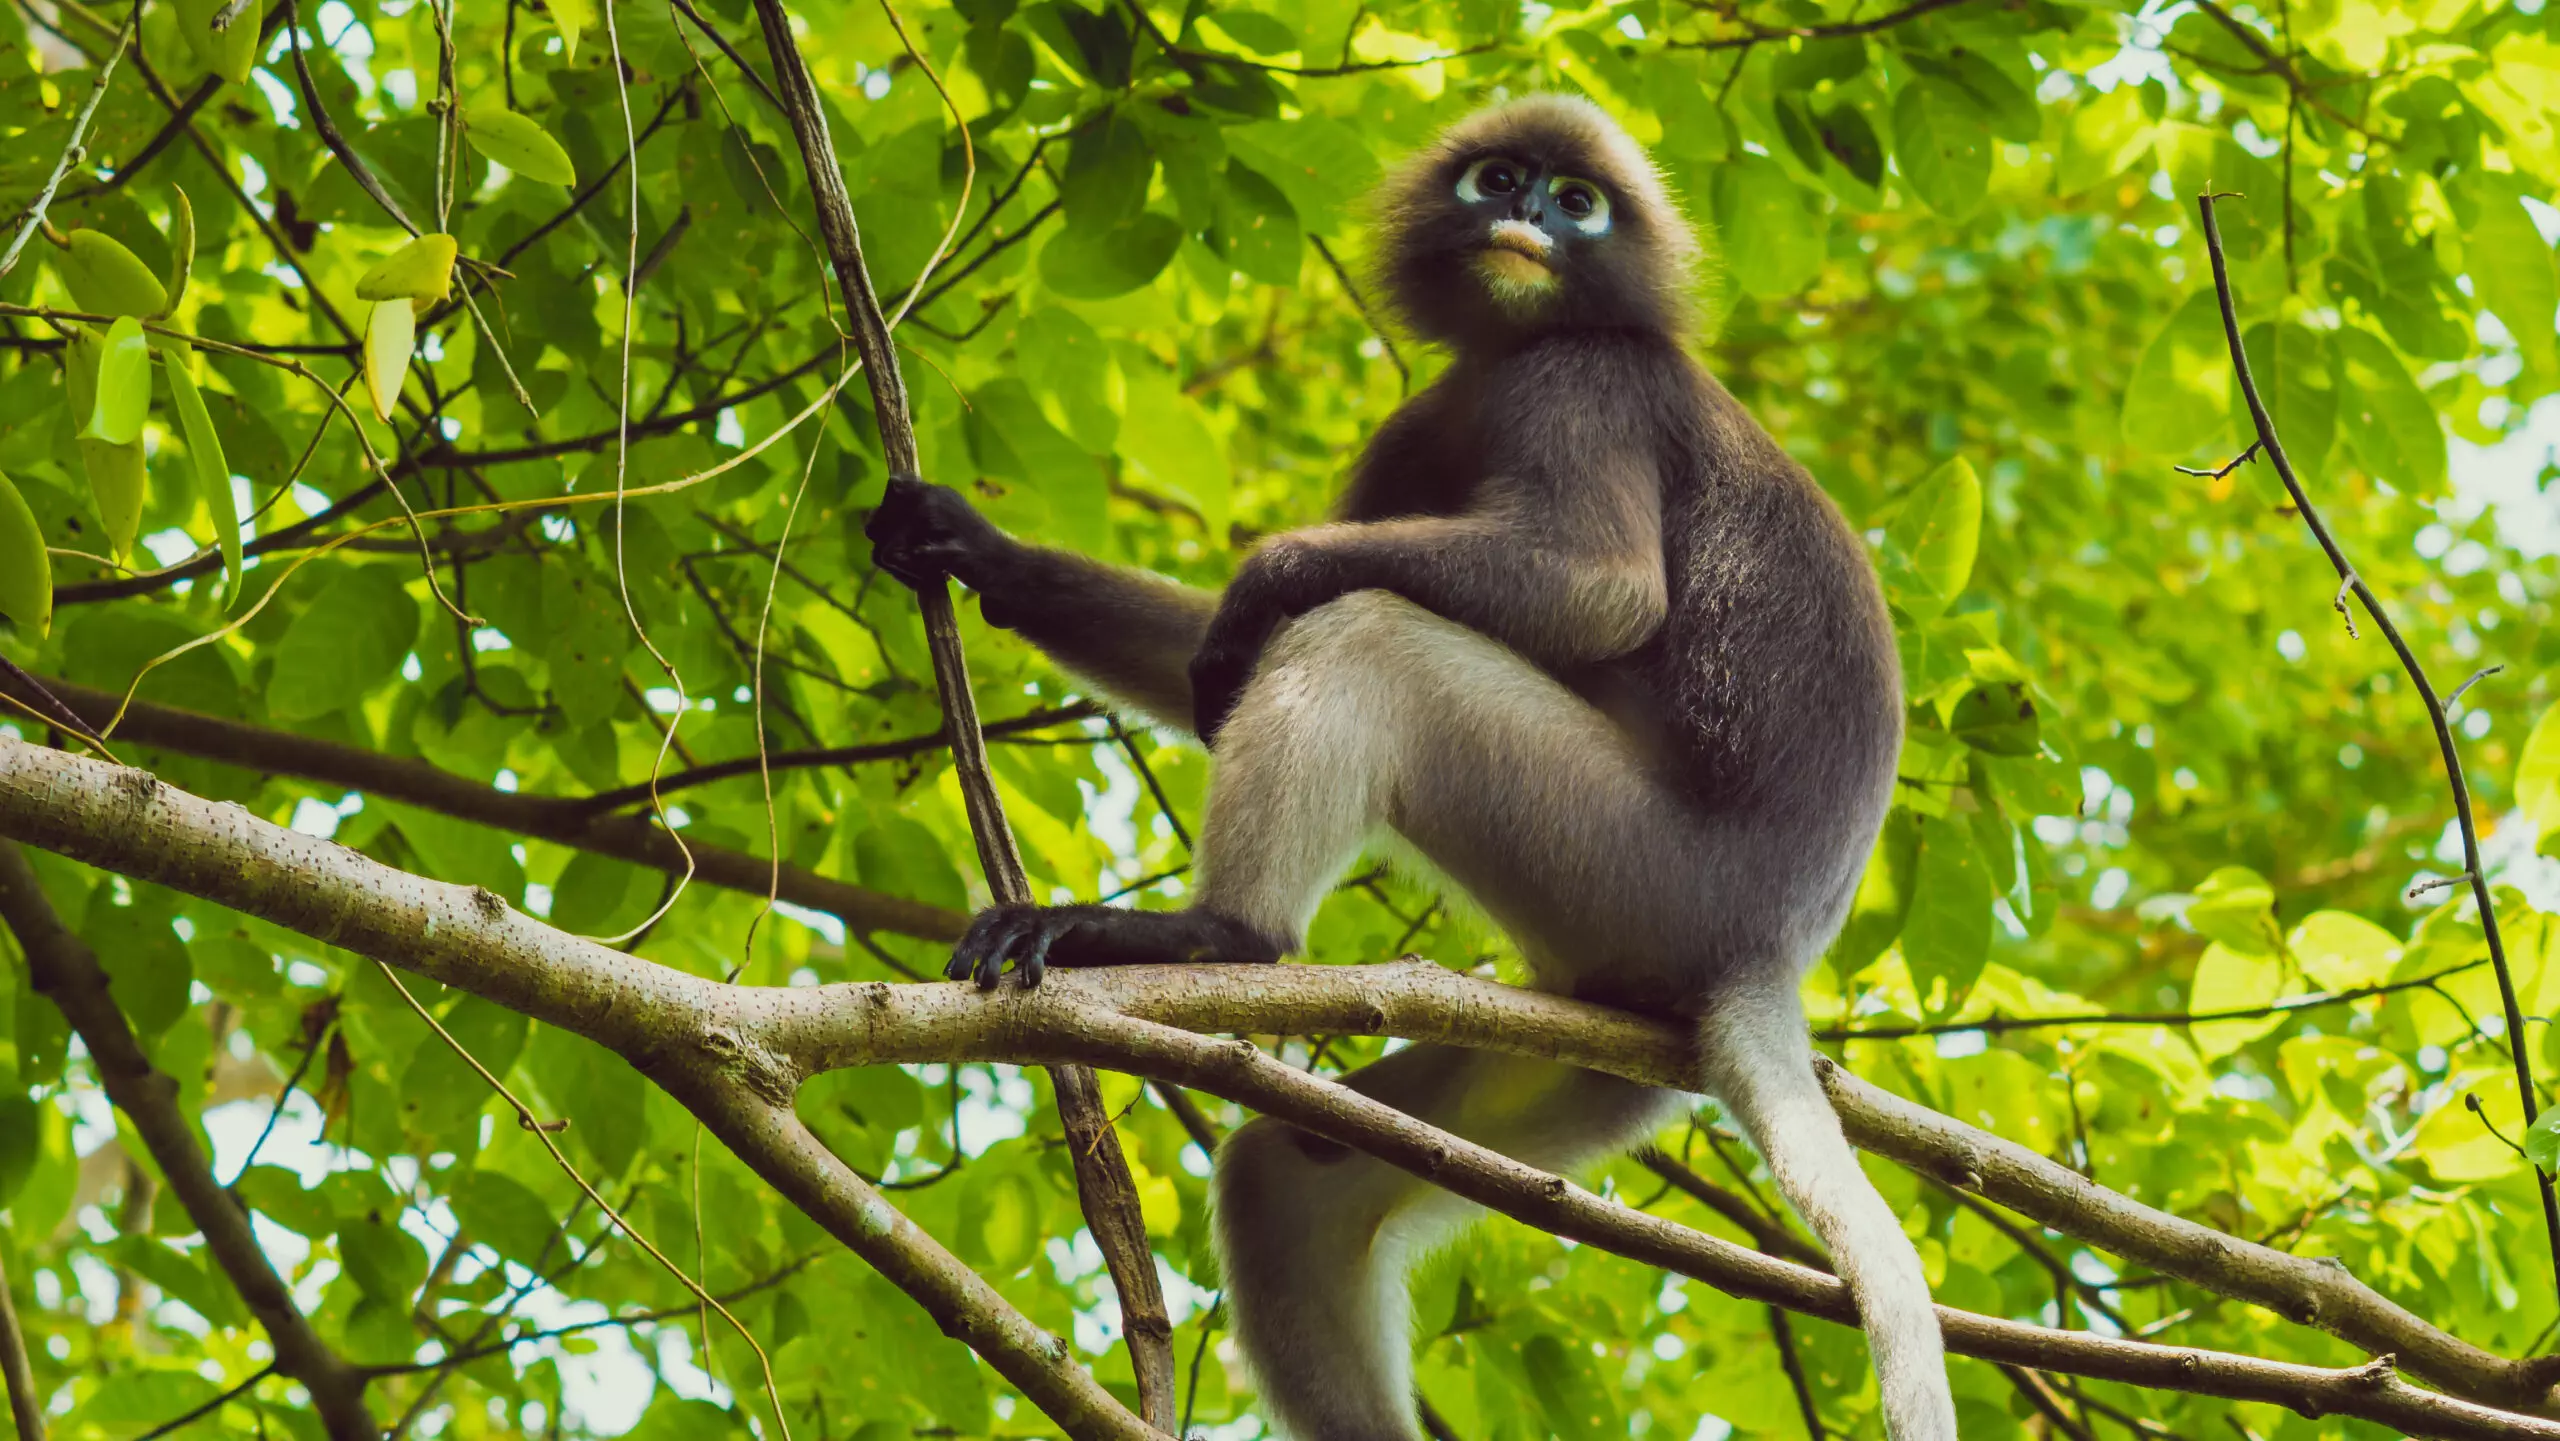 Monkey in green treetop habitat